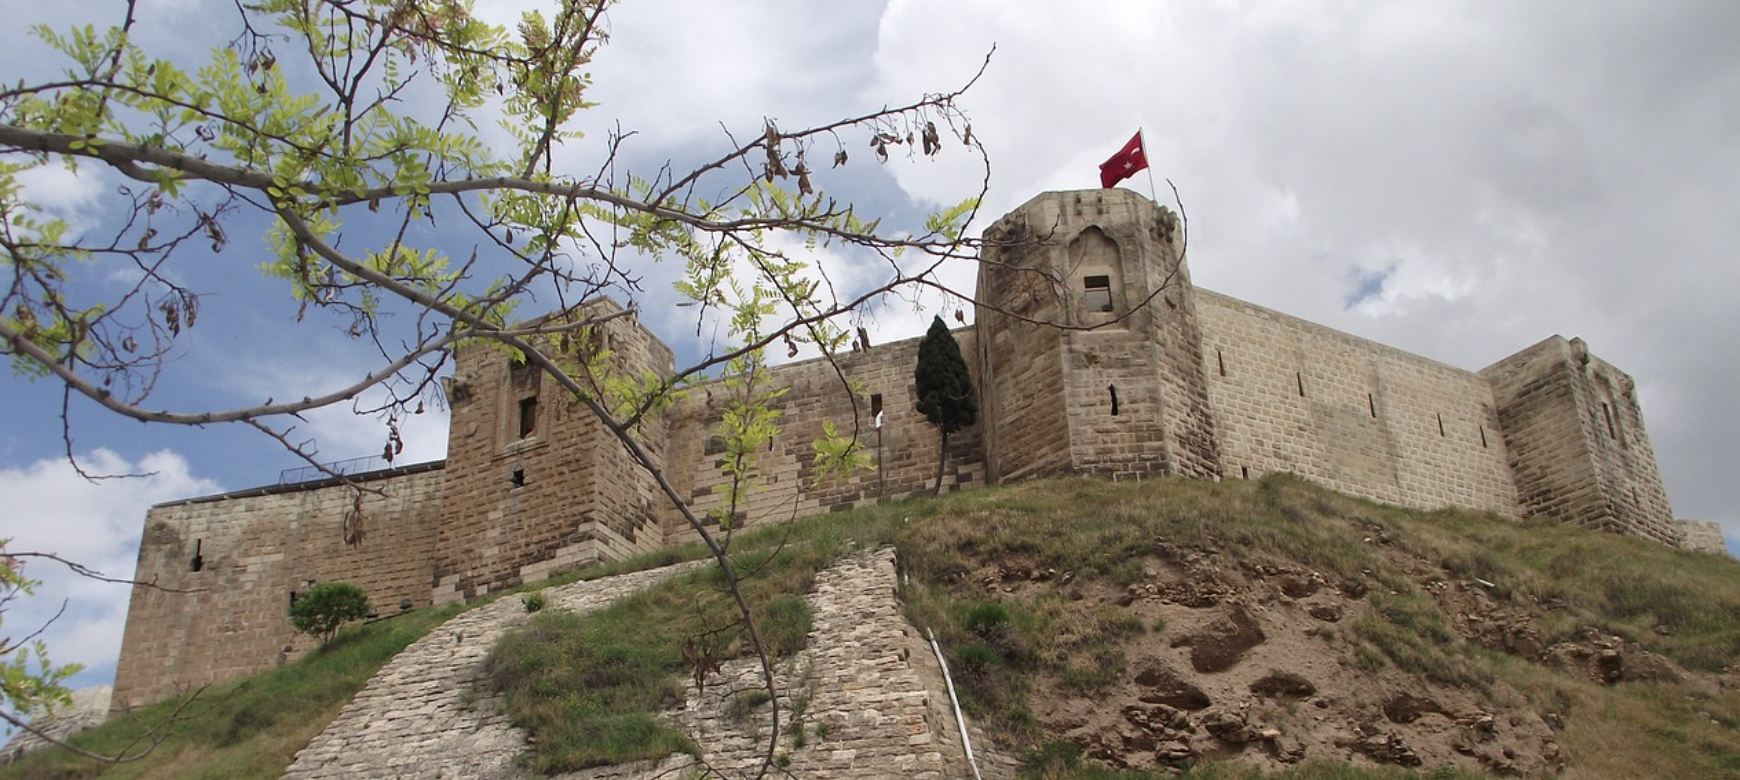 Turquie : La ville de Gaziantep va alimenter tous ses bâtiments et infrastructures municipaux grâce aux énergies renouvelables